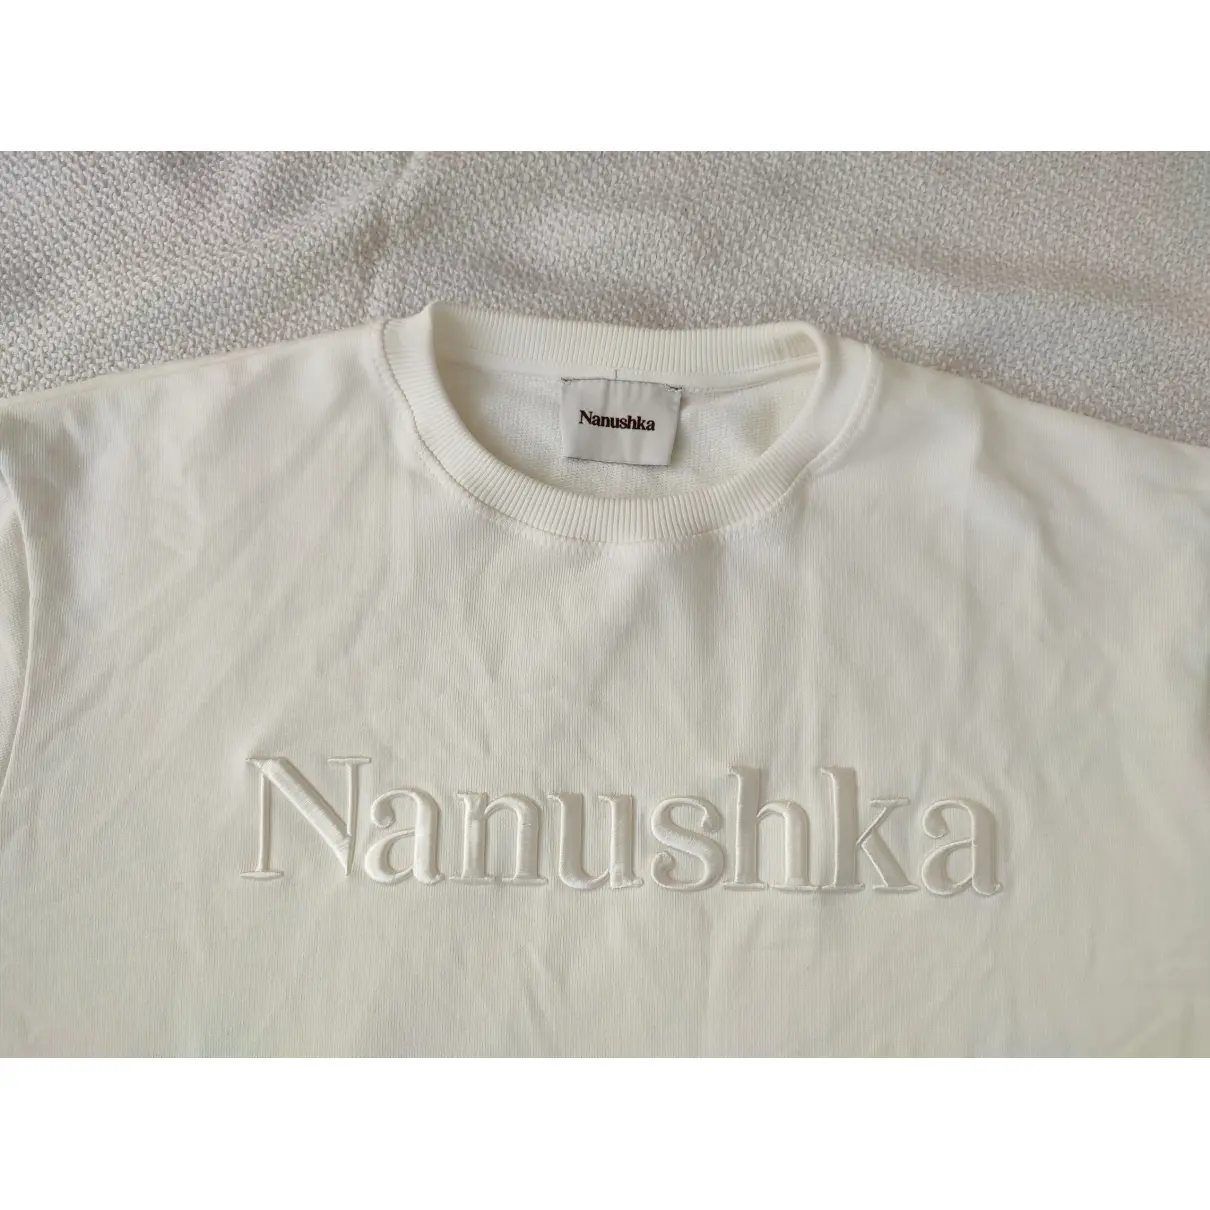 Buy Nanushka Sweatshirt online